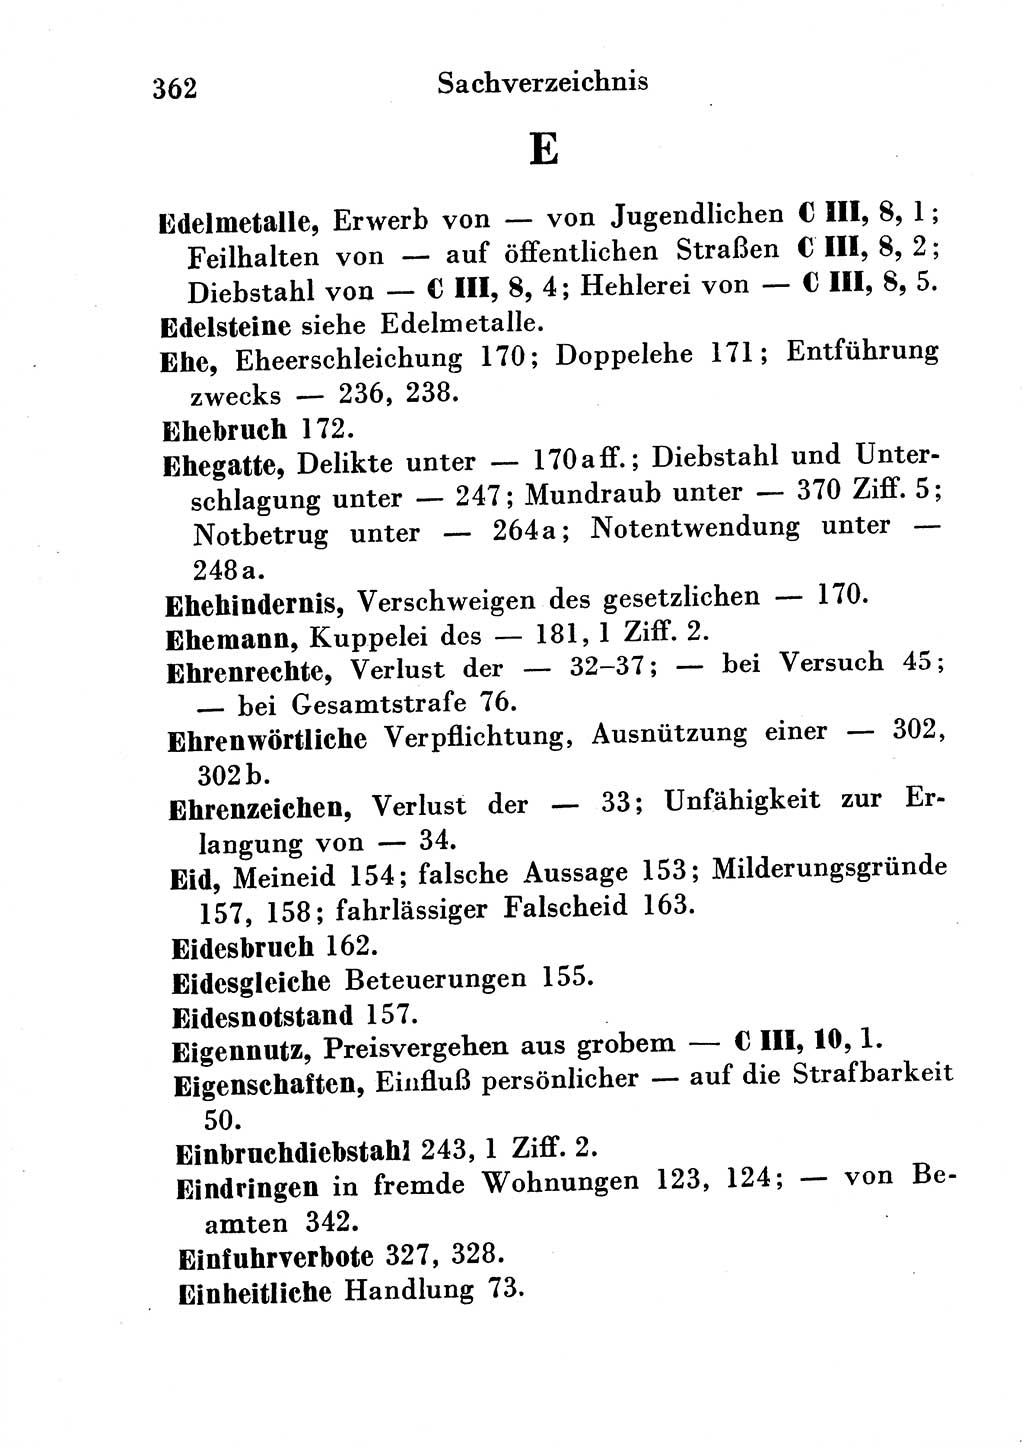 Strafgesetzbuch (StGB) und andere Strafgesetze [Deutsche Demokratische Republik (DDR)] 1954, Seite 362 (StGB Strafges. DDR 1954, S. 362)